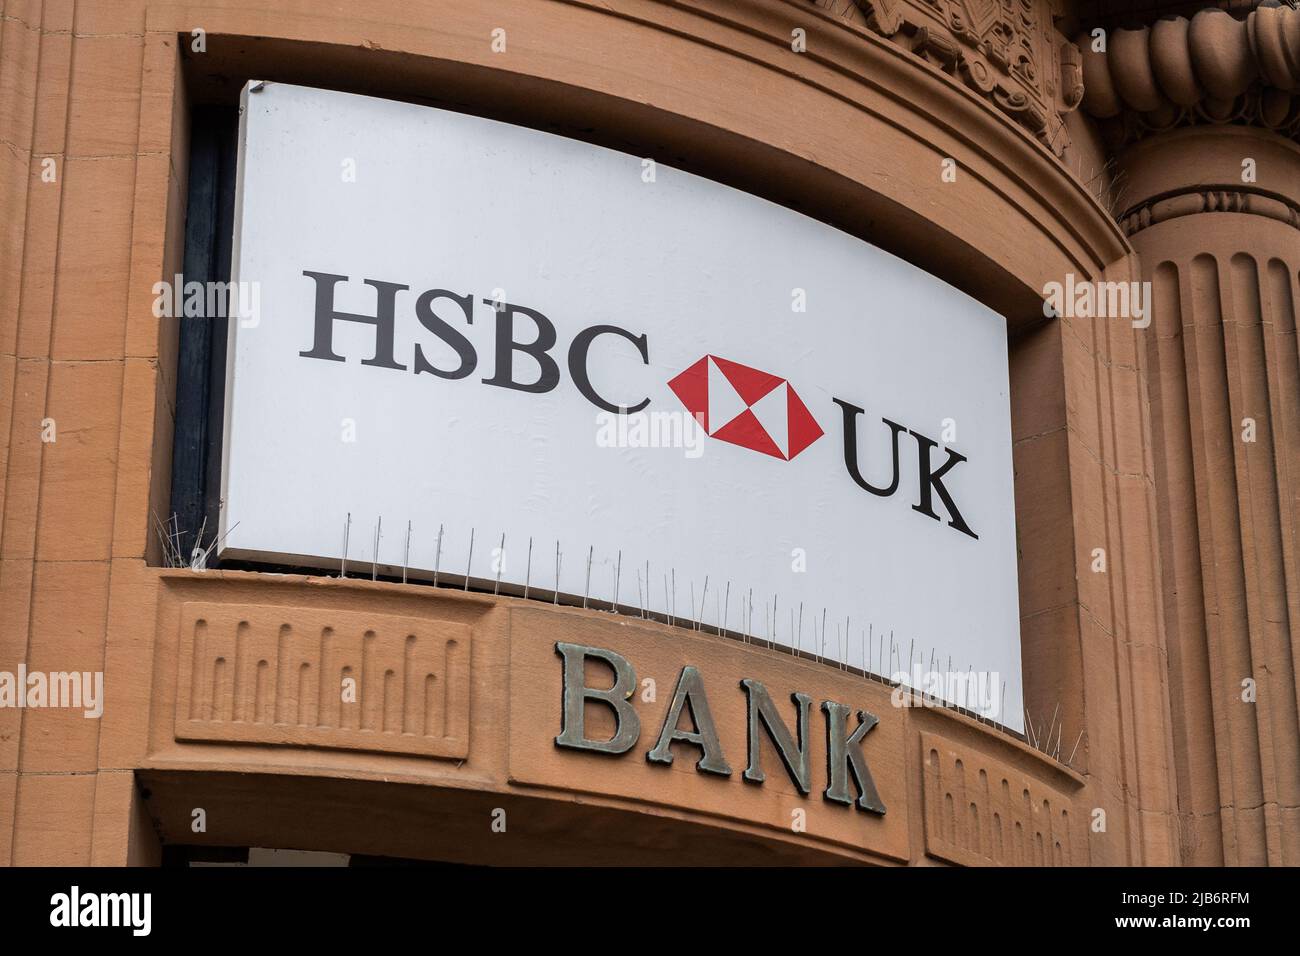 HSBC UK firma bancaria en el exterior de su sucursal en Lincoln, Lincolnshire, Reino Unido. Foto de stock